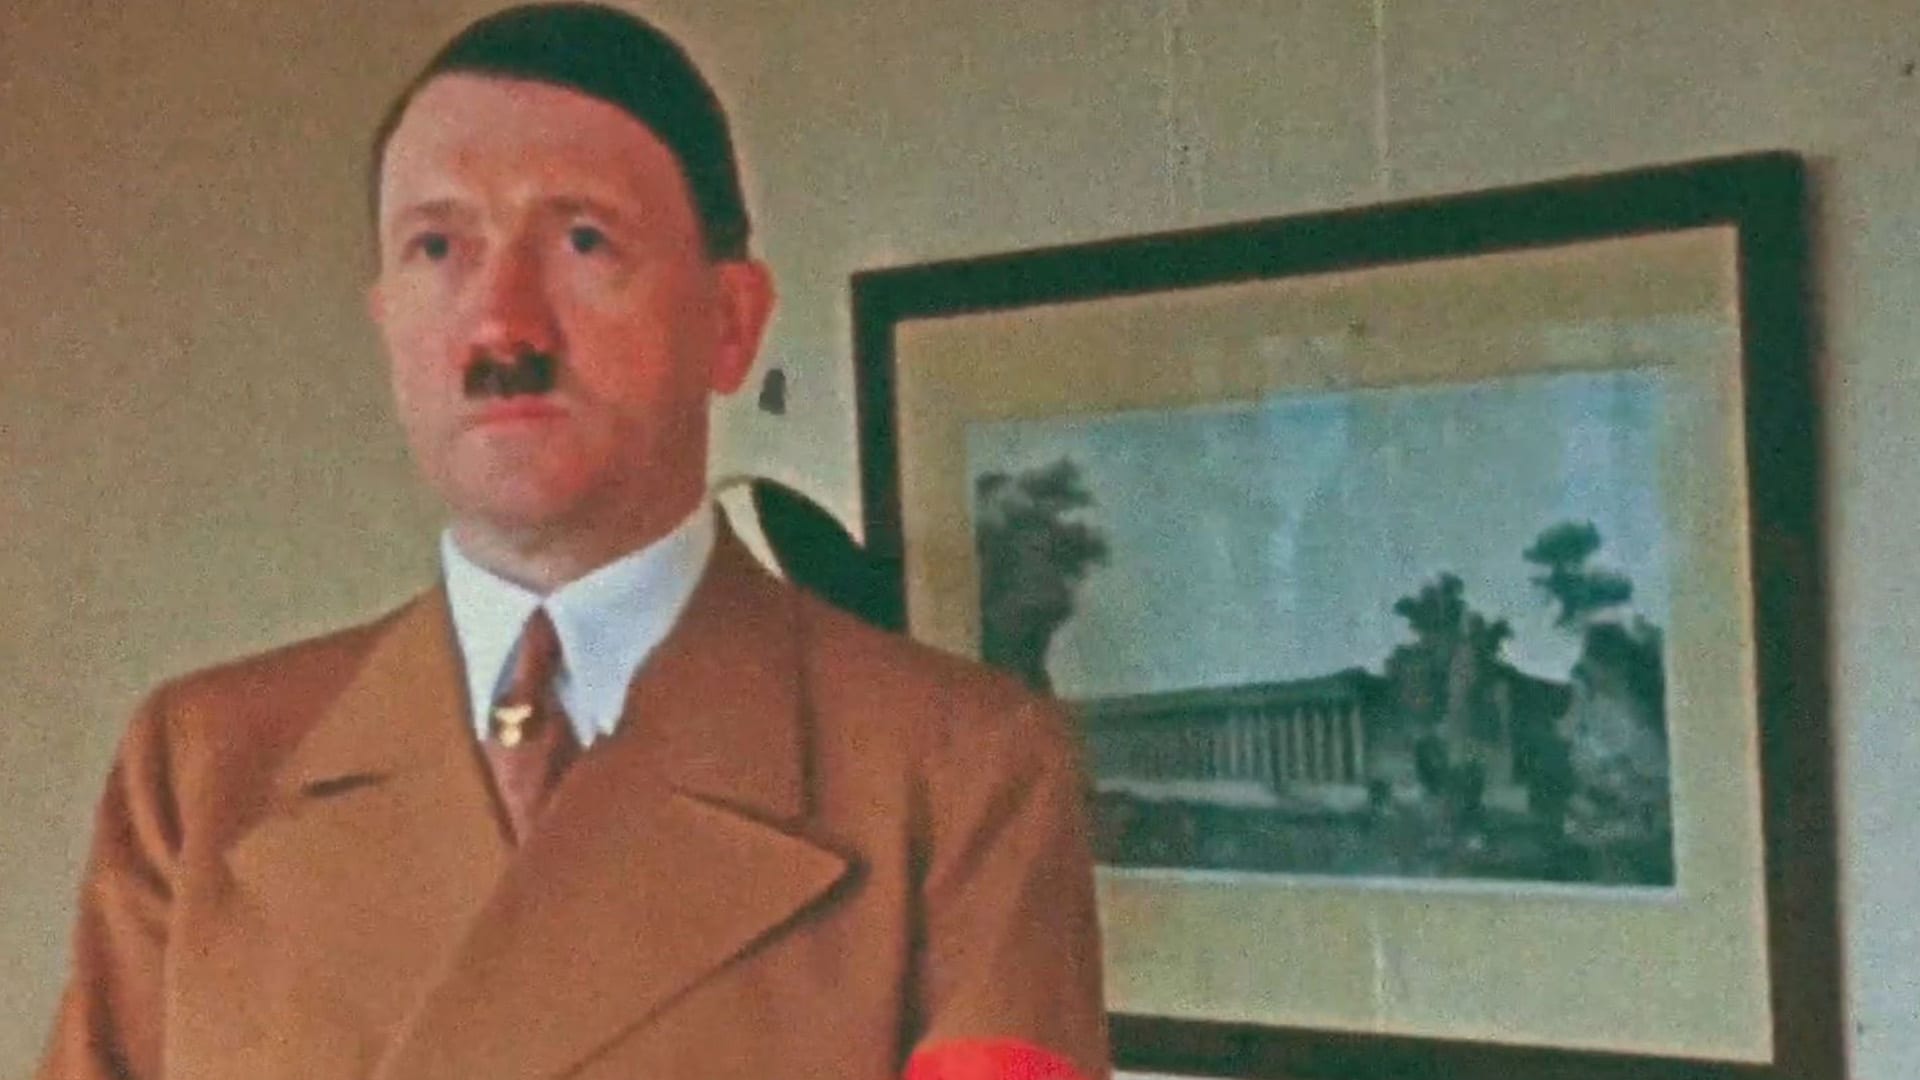 Dokument přinese unikátní barevné záběry Adolfa Hitlera